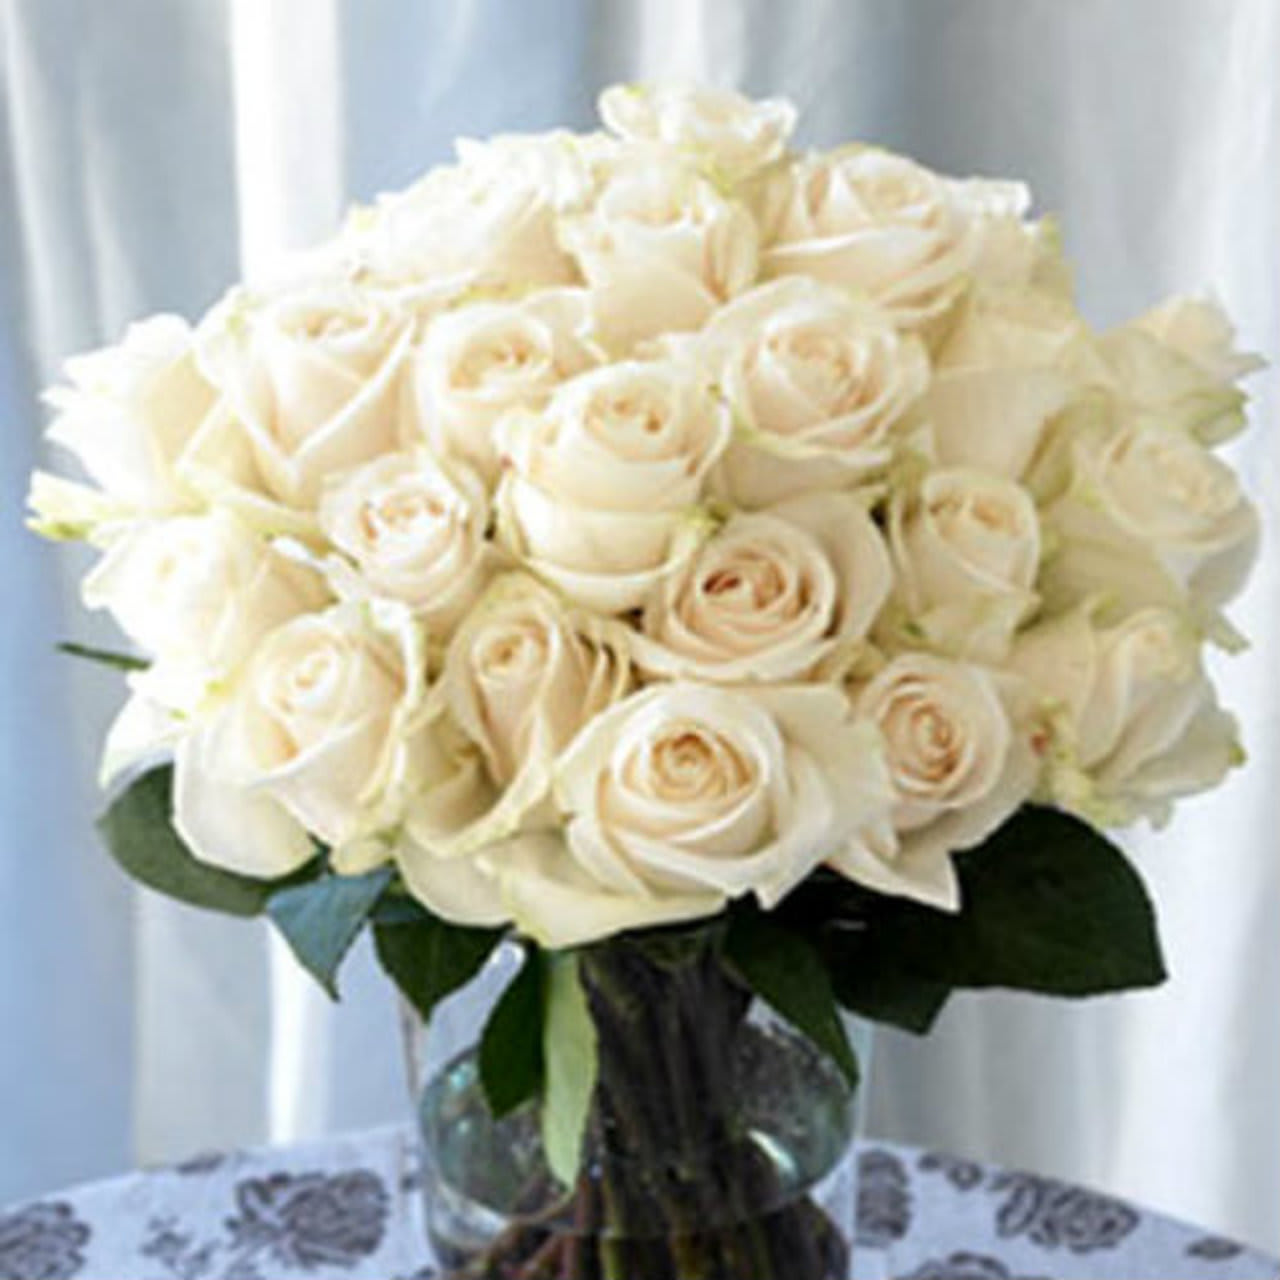 White 24 Roses arranged in a vase - 24 White Roses arranged Round in a vase. (Standard) (Deluxe): 30 White Roses. (Premium): 36 White Roses.